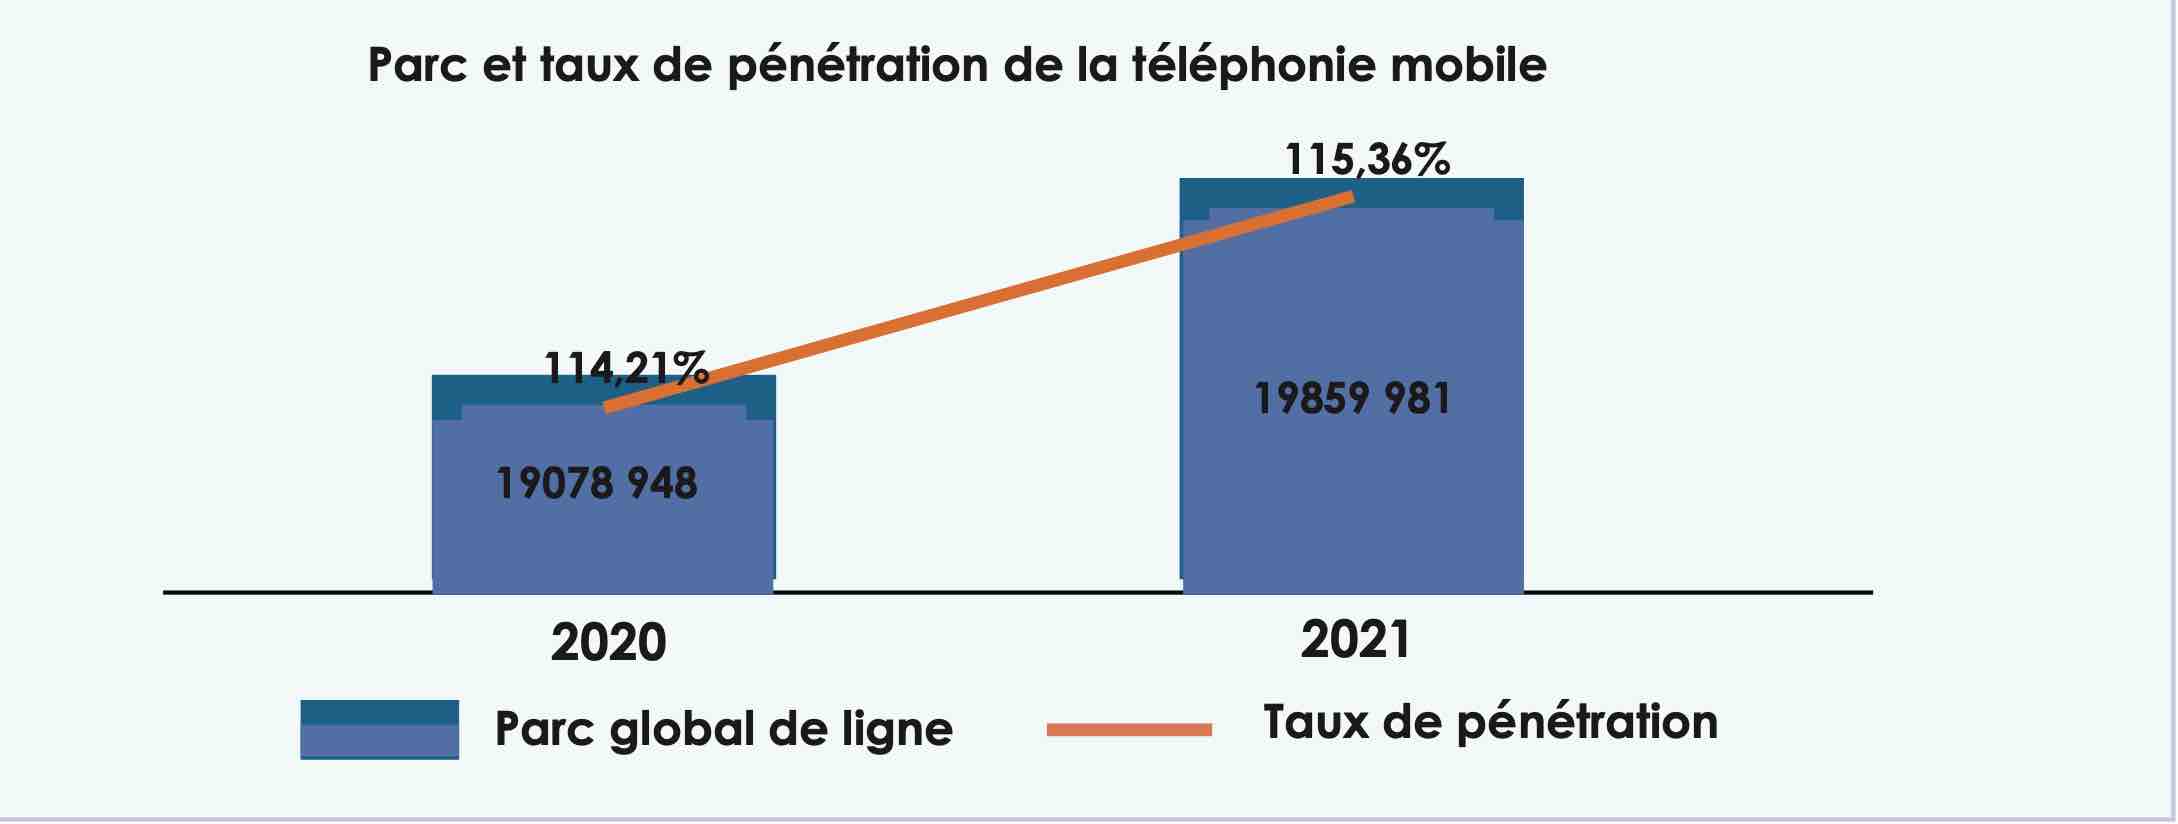 Evolution du parc de lignes de la téléphonie mobile et du taux de pénétration